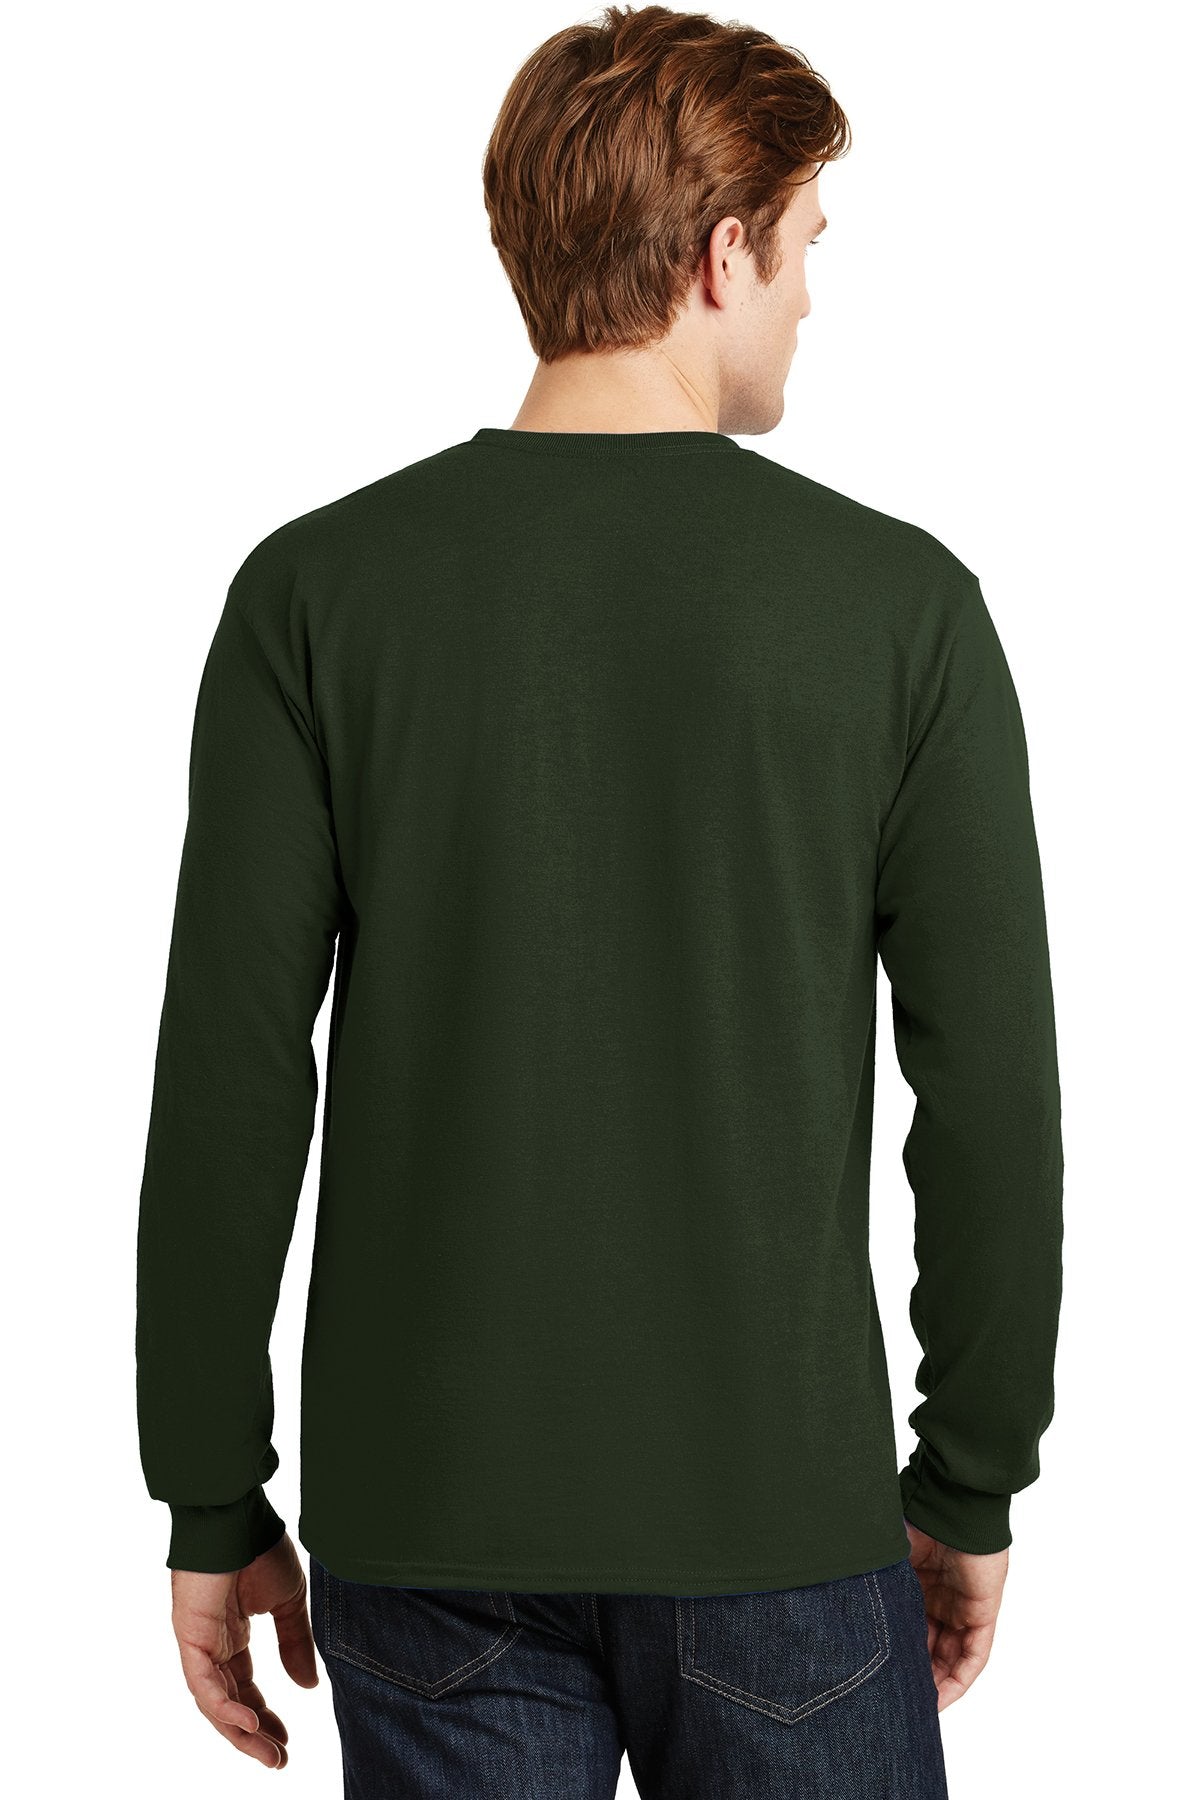 gildan dryblend cotton poly long sleeve t shirt 8400 forest green